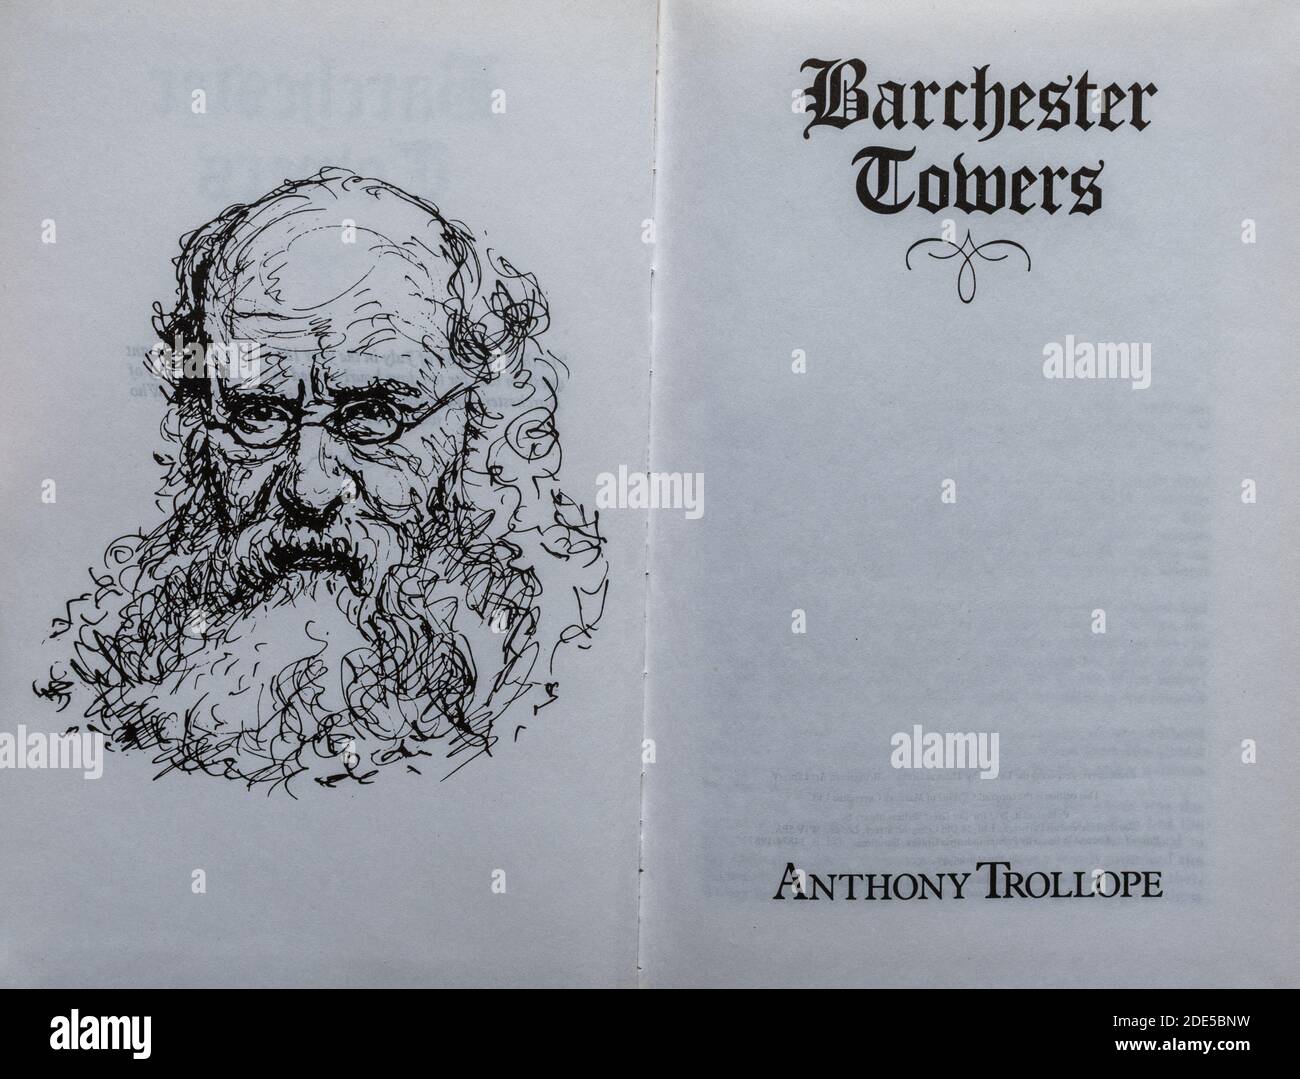 Barchester Towers Buch - Roman von Anthony Trollope. Titelseite und Zeichnung des Autors. Stockfoto